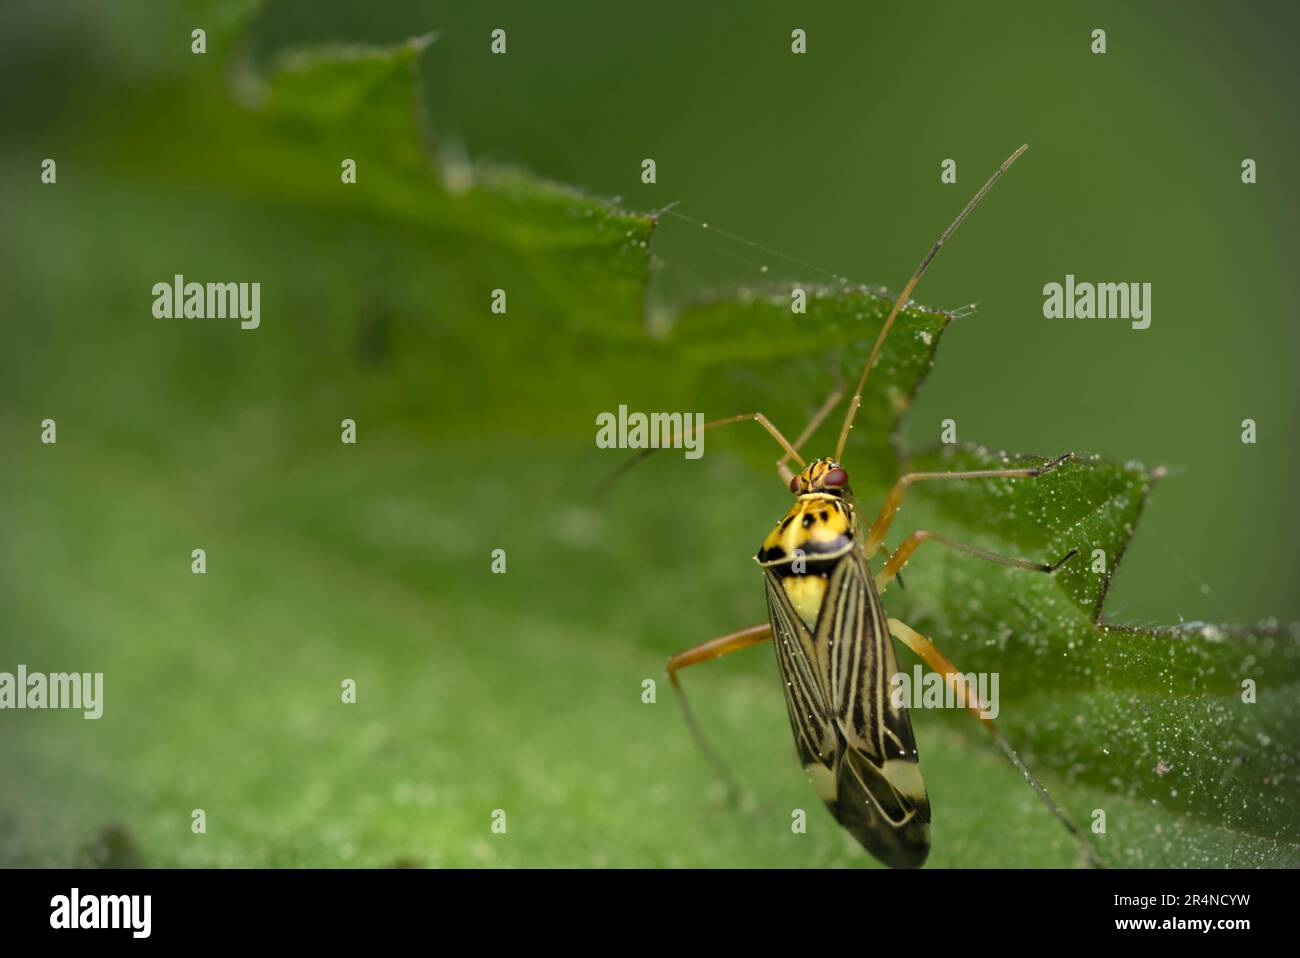 Käfer (Rhabdomiris striatellus), die auf Brennnessel kriechen (Urtica sp.) Makrofotografie, Insekten, echte Insekten, Artenvielfalt Stockfoto